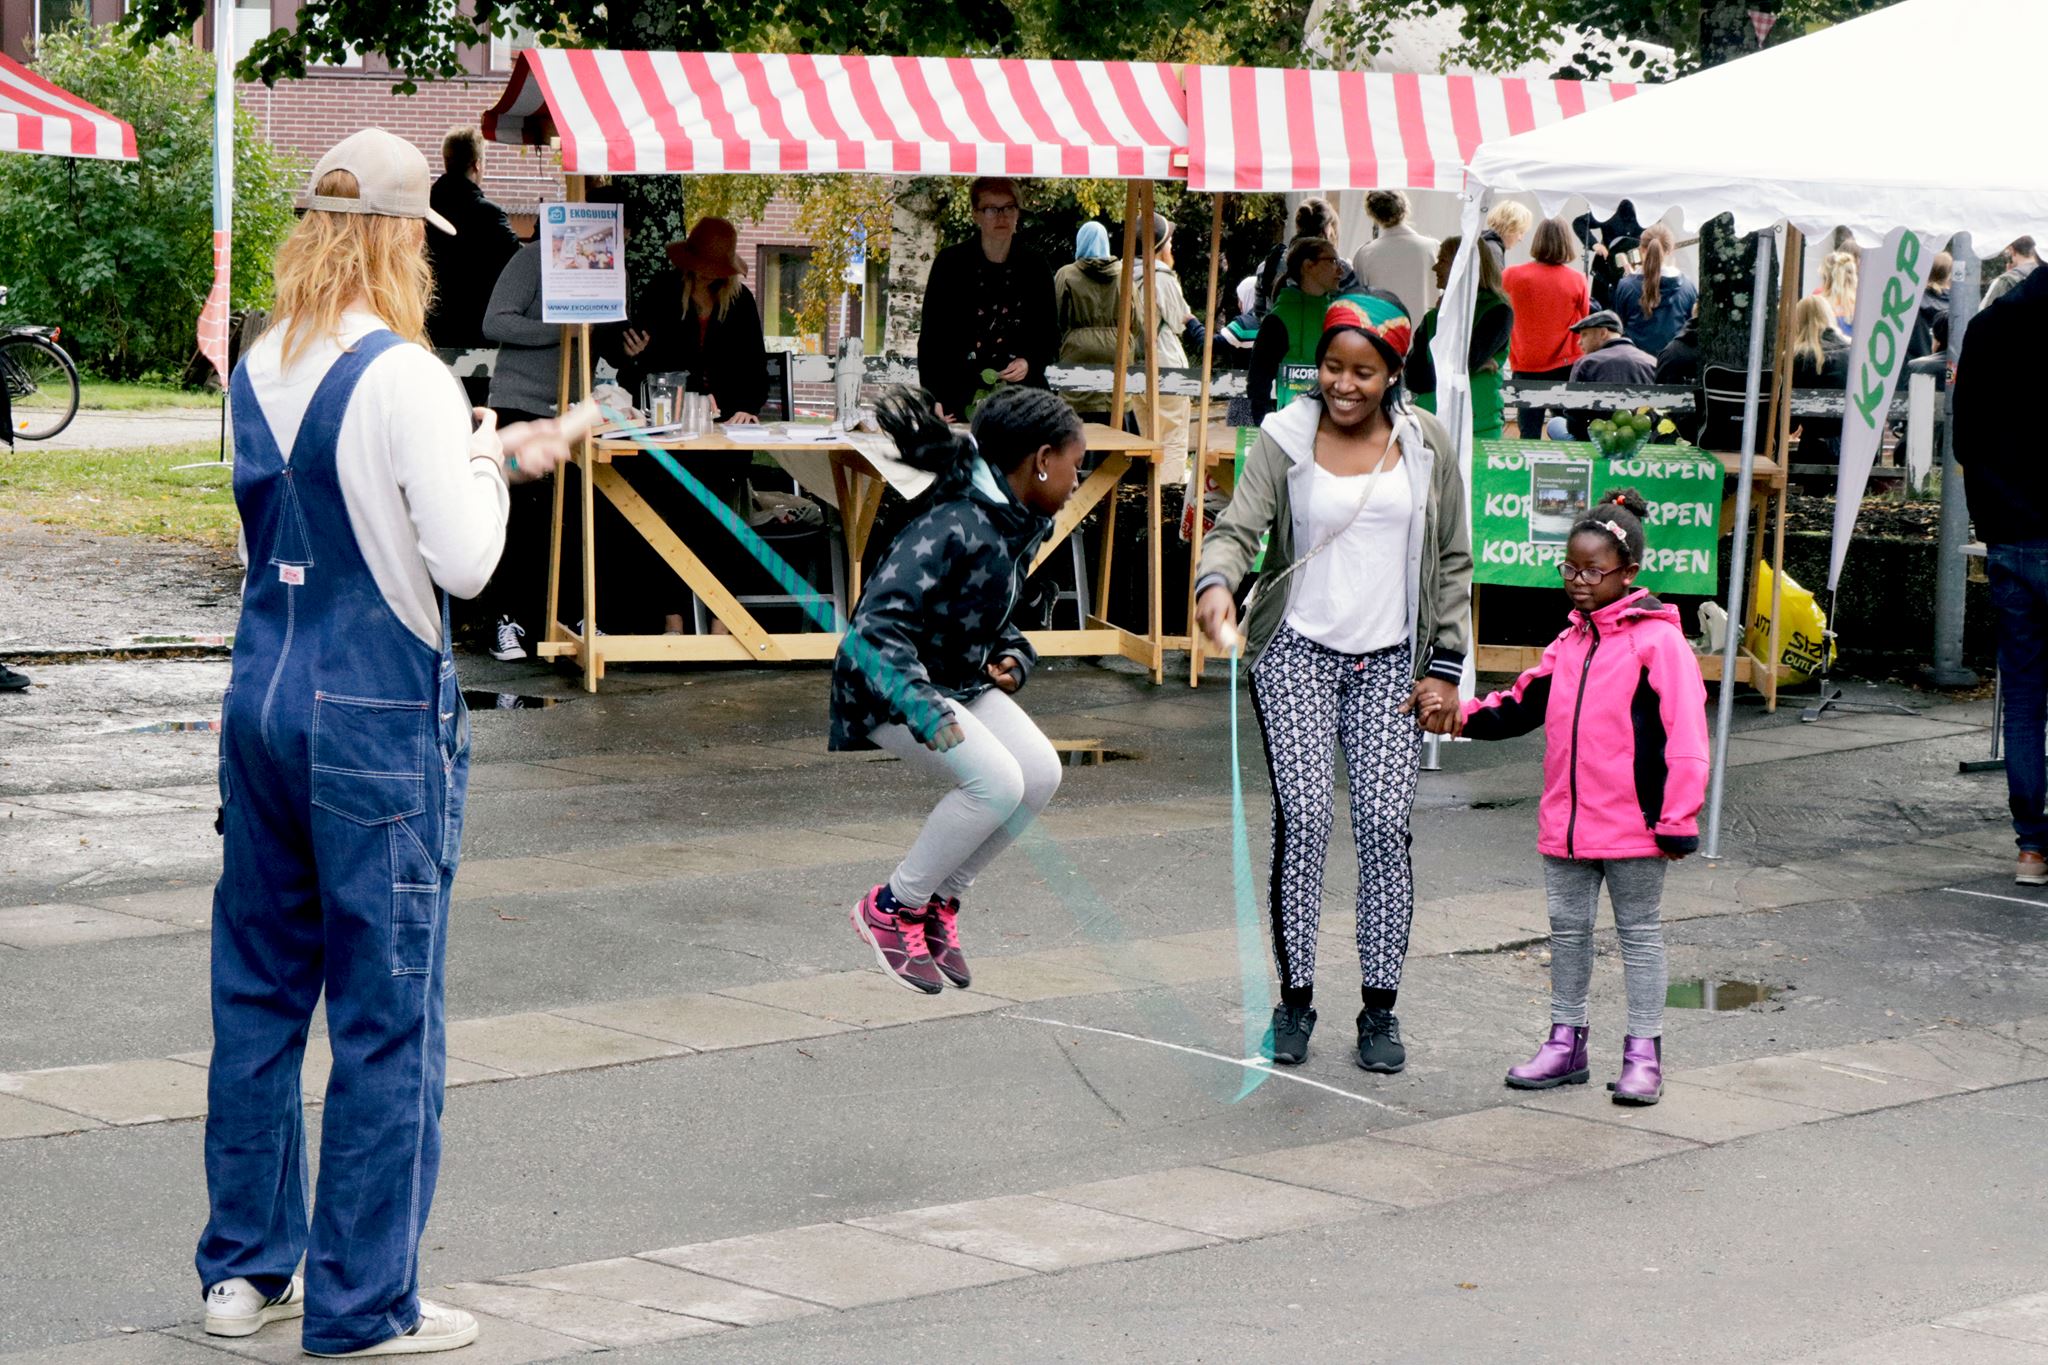 En bild på en liten flicka som hoppar hopprep, två vuxna håller repet. Bakom skymtas en marknadsplats